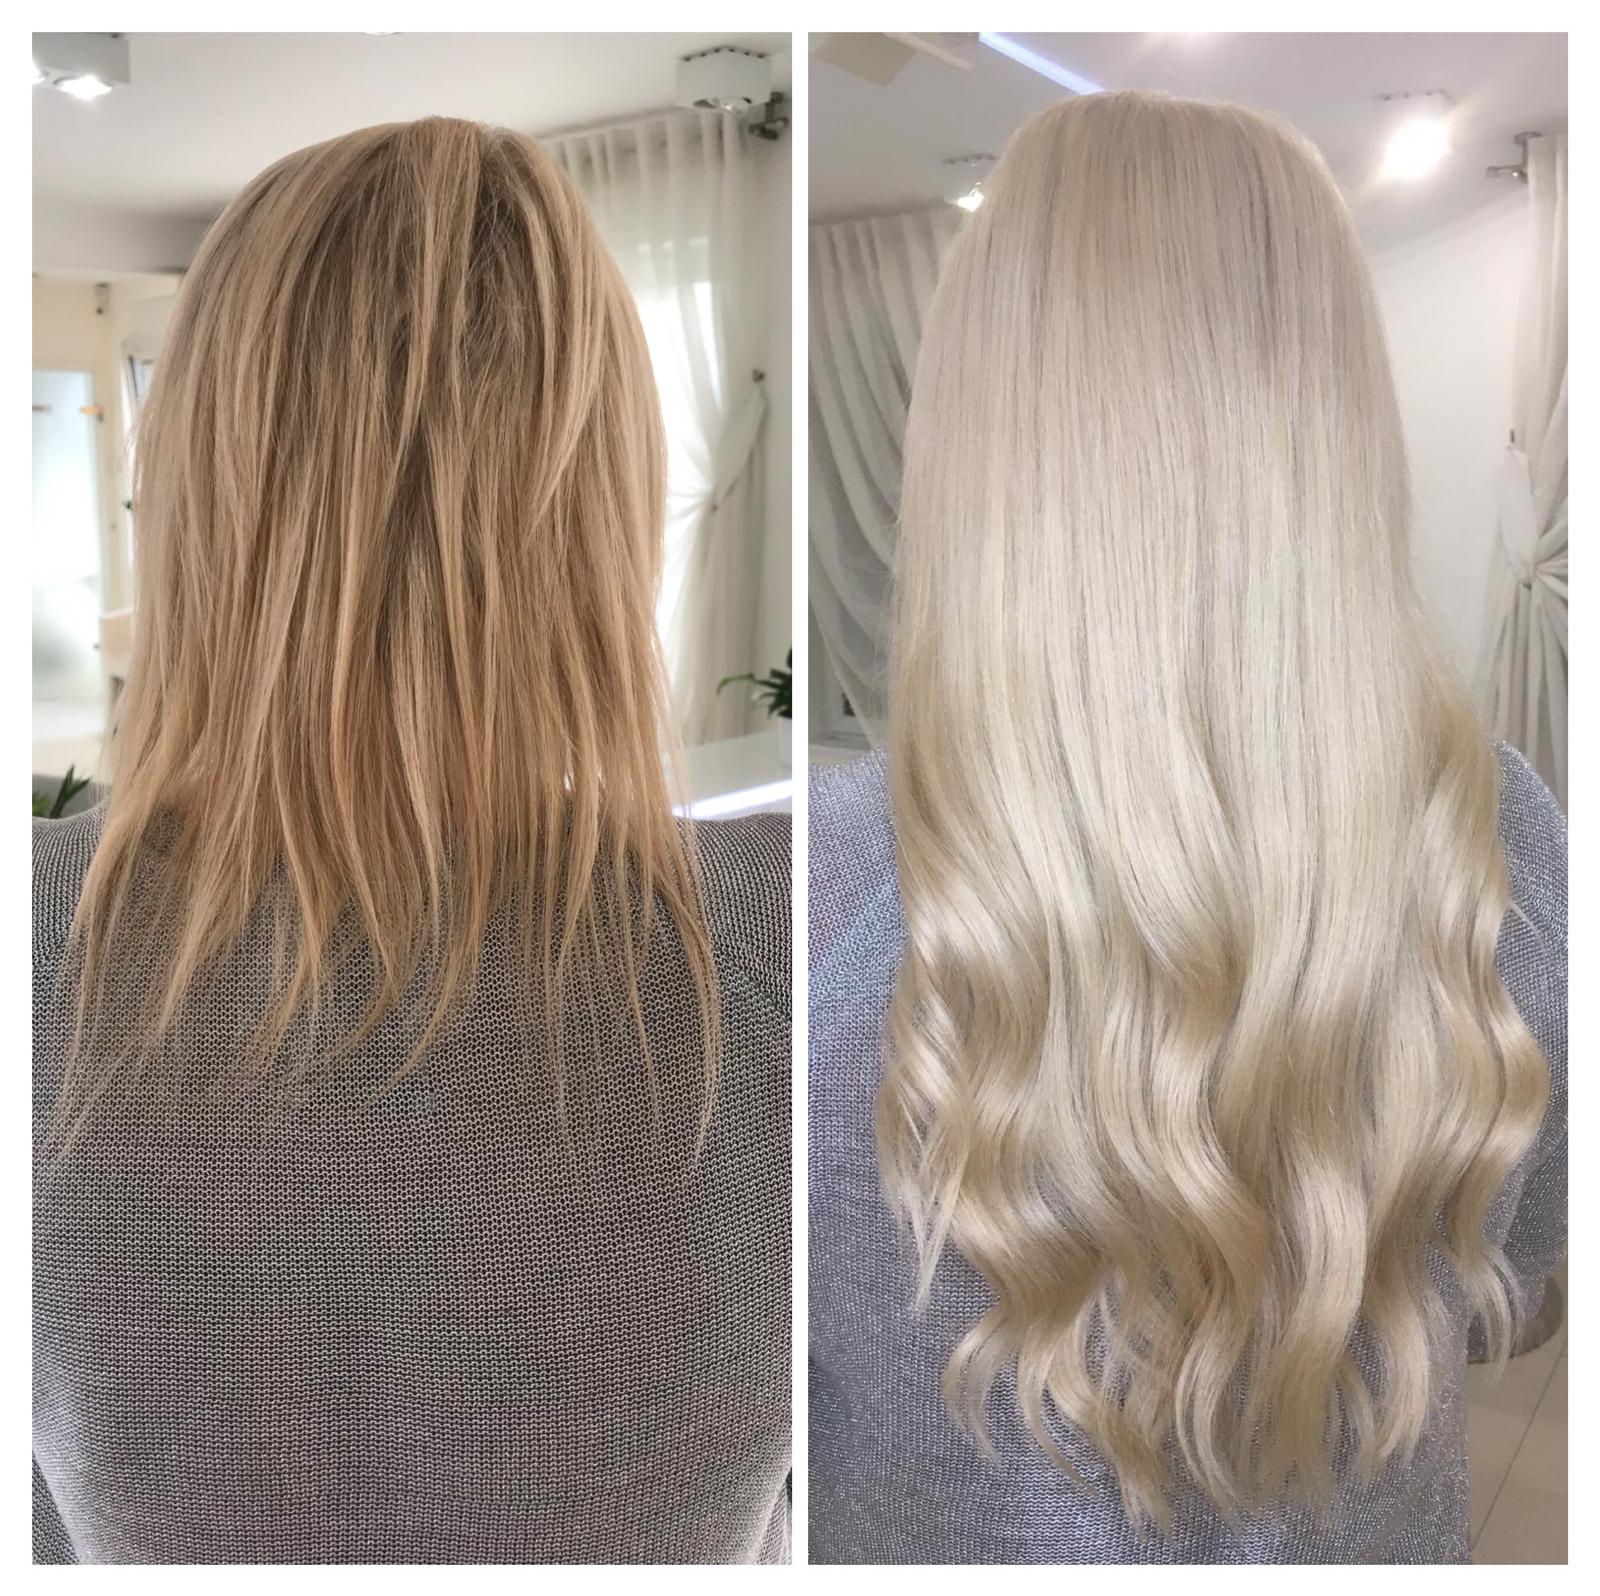 Włosy klientki przed i po zabiegu przedłużania włosami słowiańskimi na mikroringi